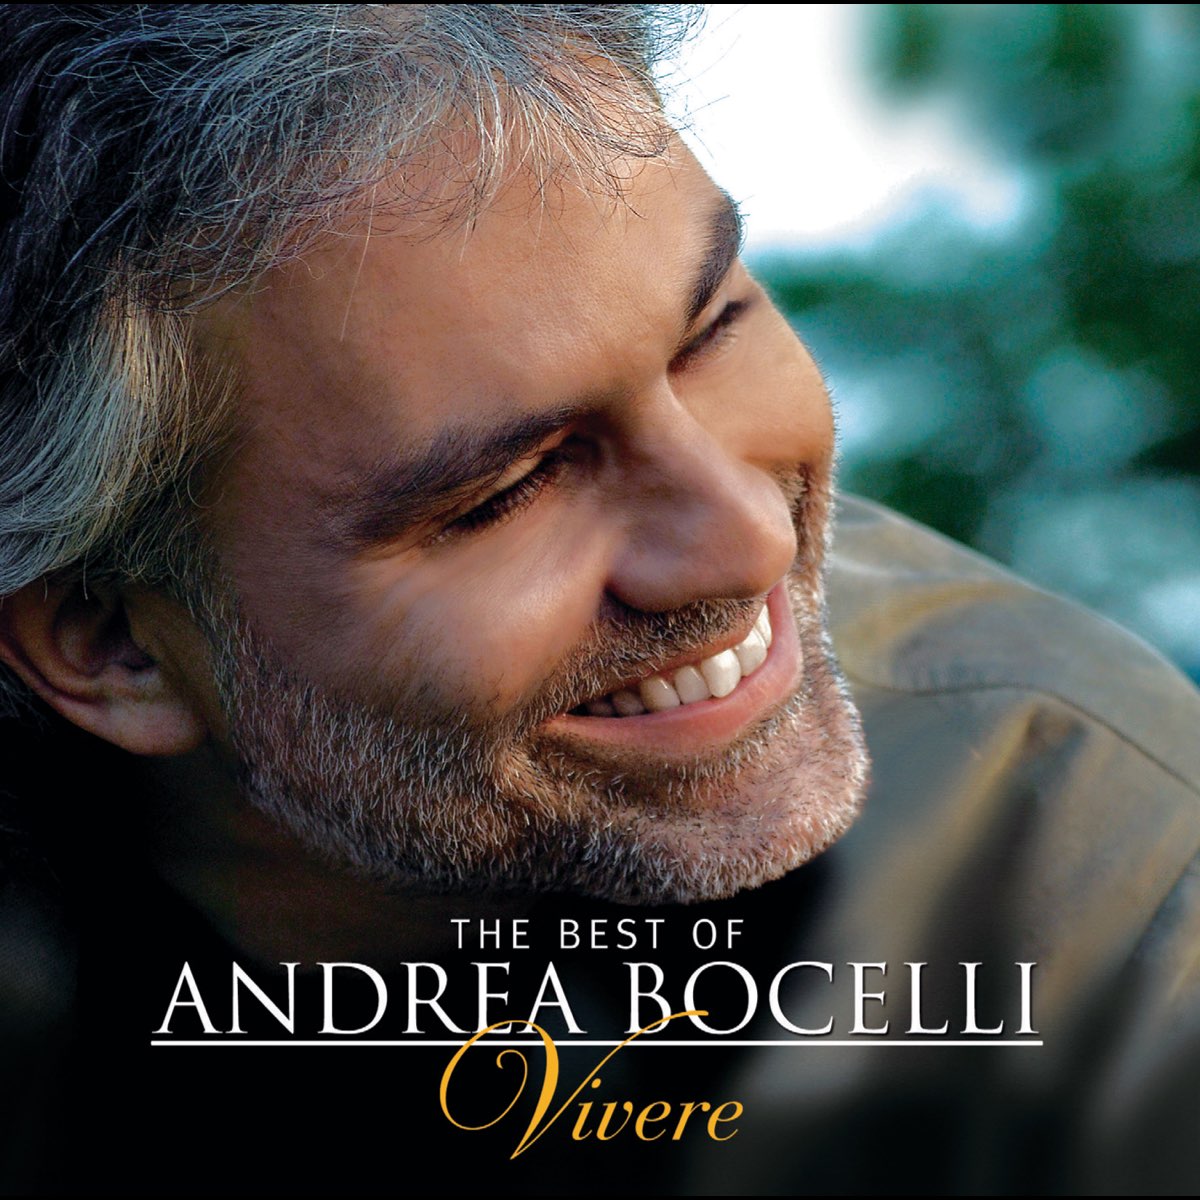 The Best of Andrea Bocelli: 'Vivere' par Andrea Bocelli sur Apple Music